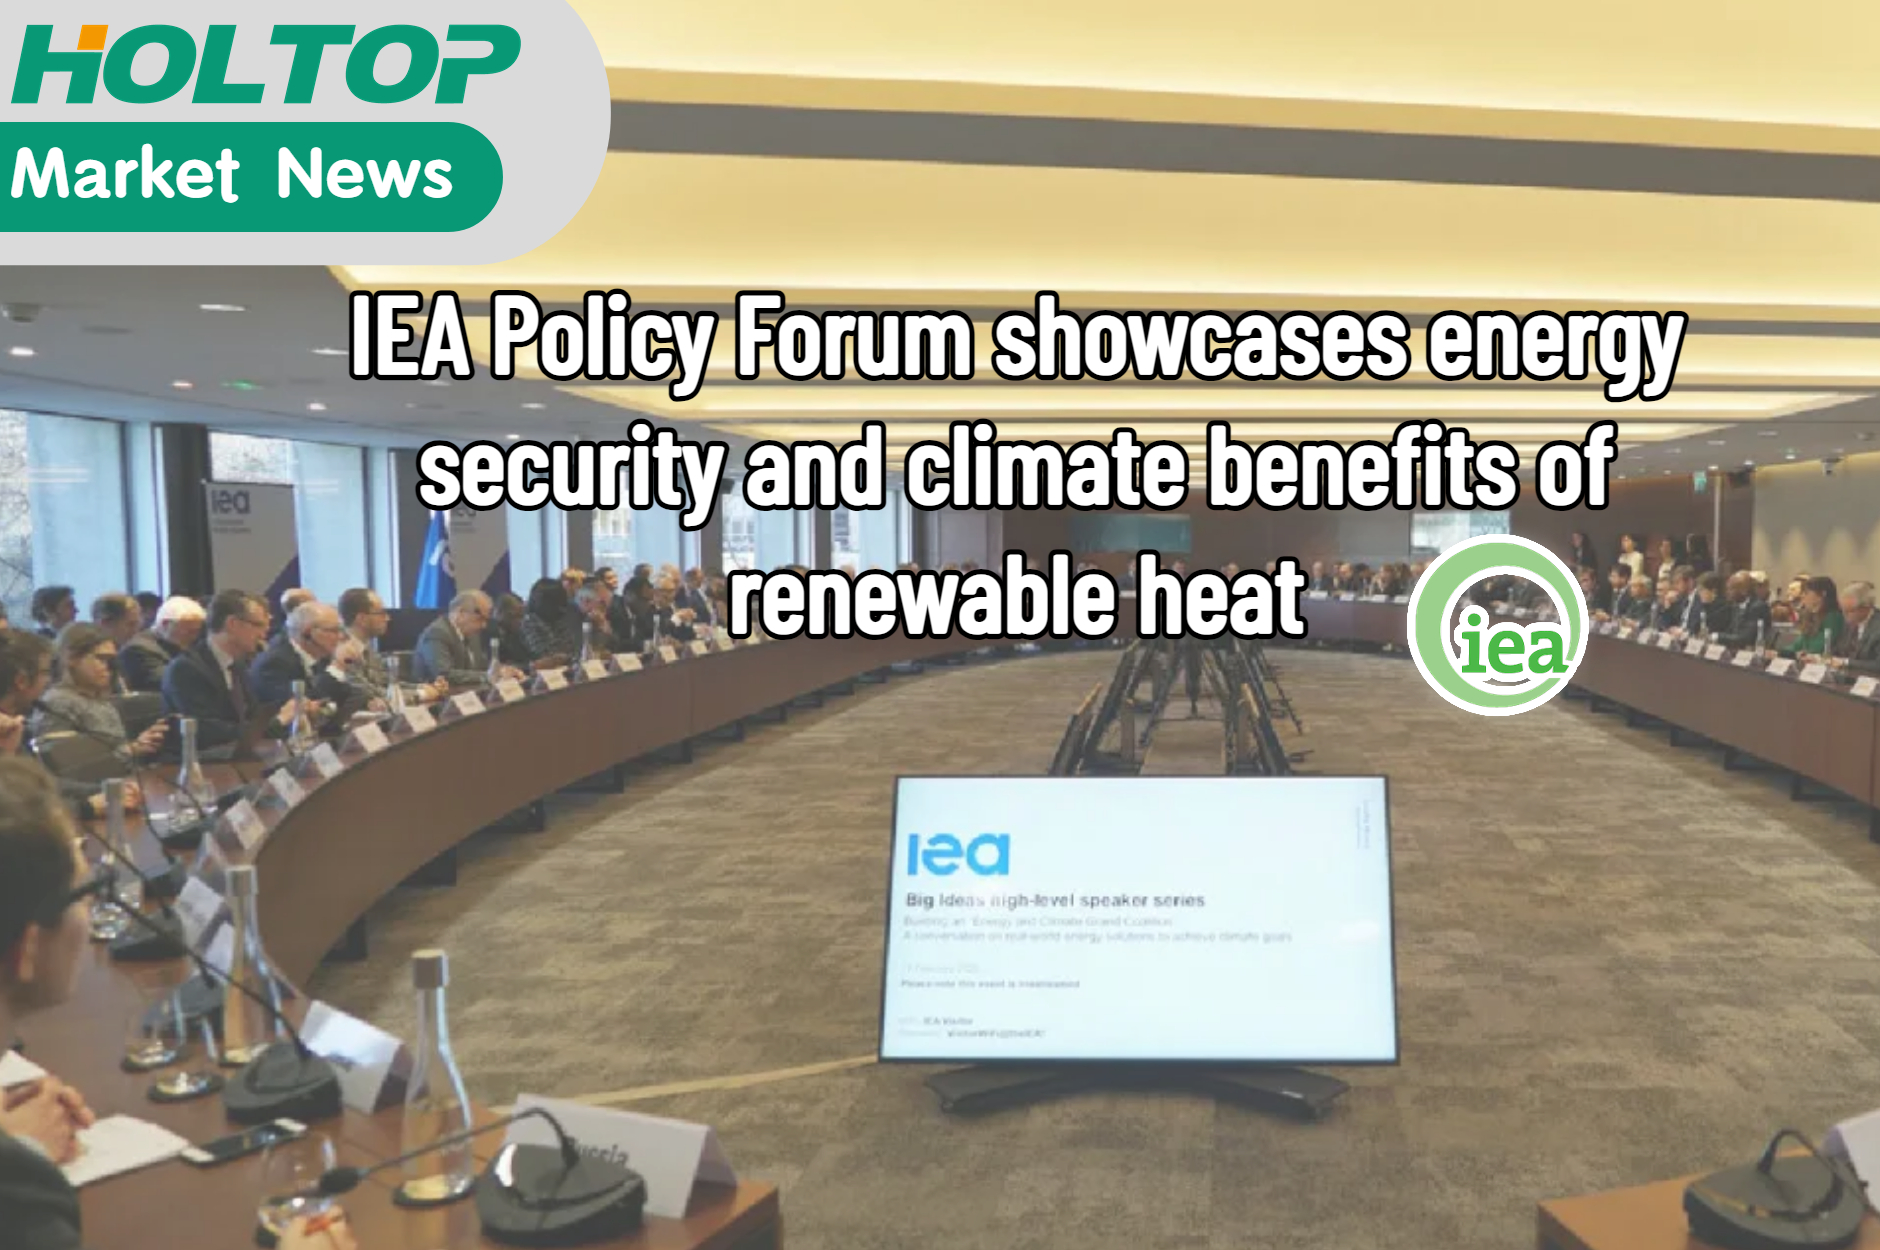 يستعرض منتدى سياسة الوكالة الدولية للطاقة أمن الطاقة والفوائد المناخية للحرارة المتجددة